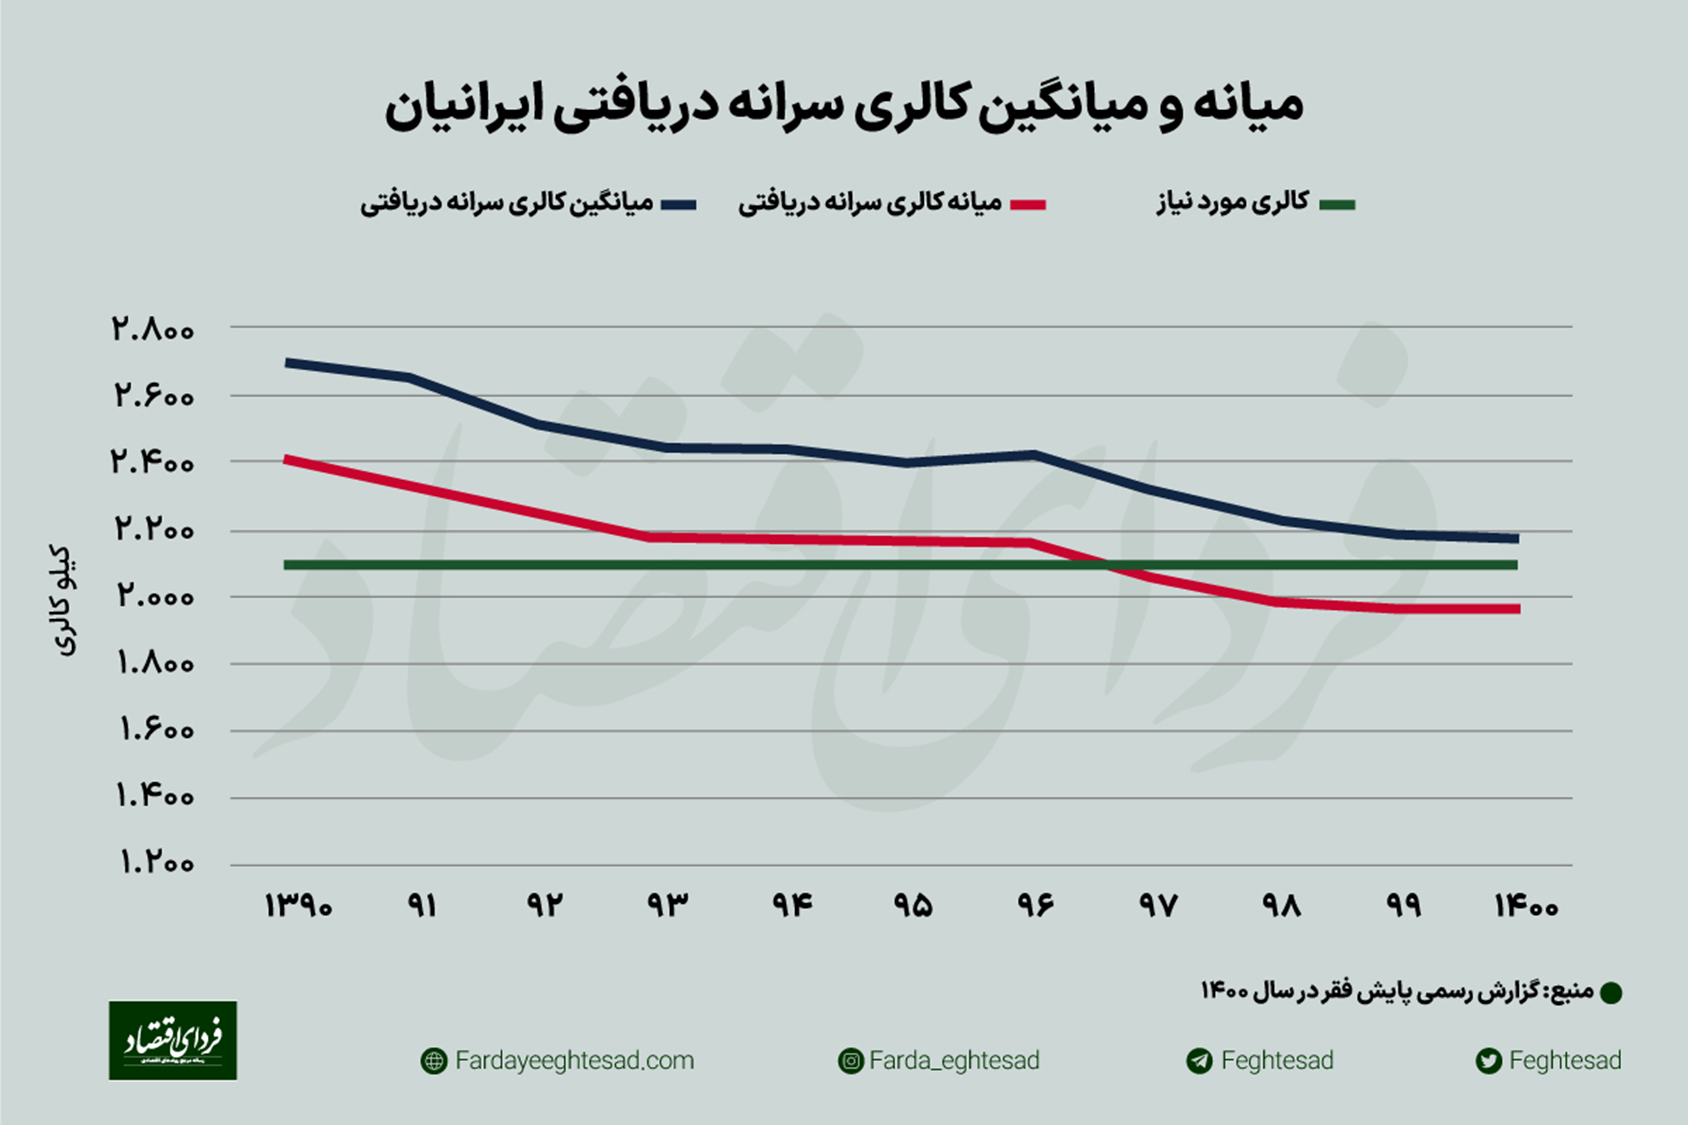 بررسی وضعیت فقر غذایی در ایران